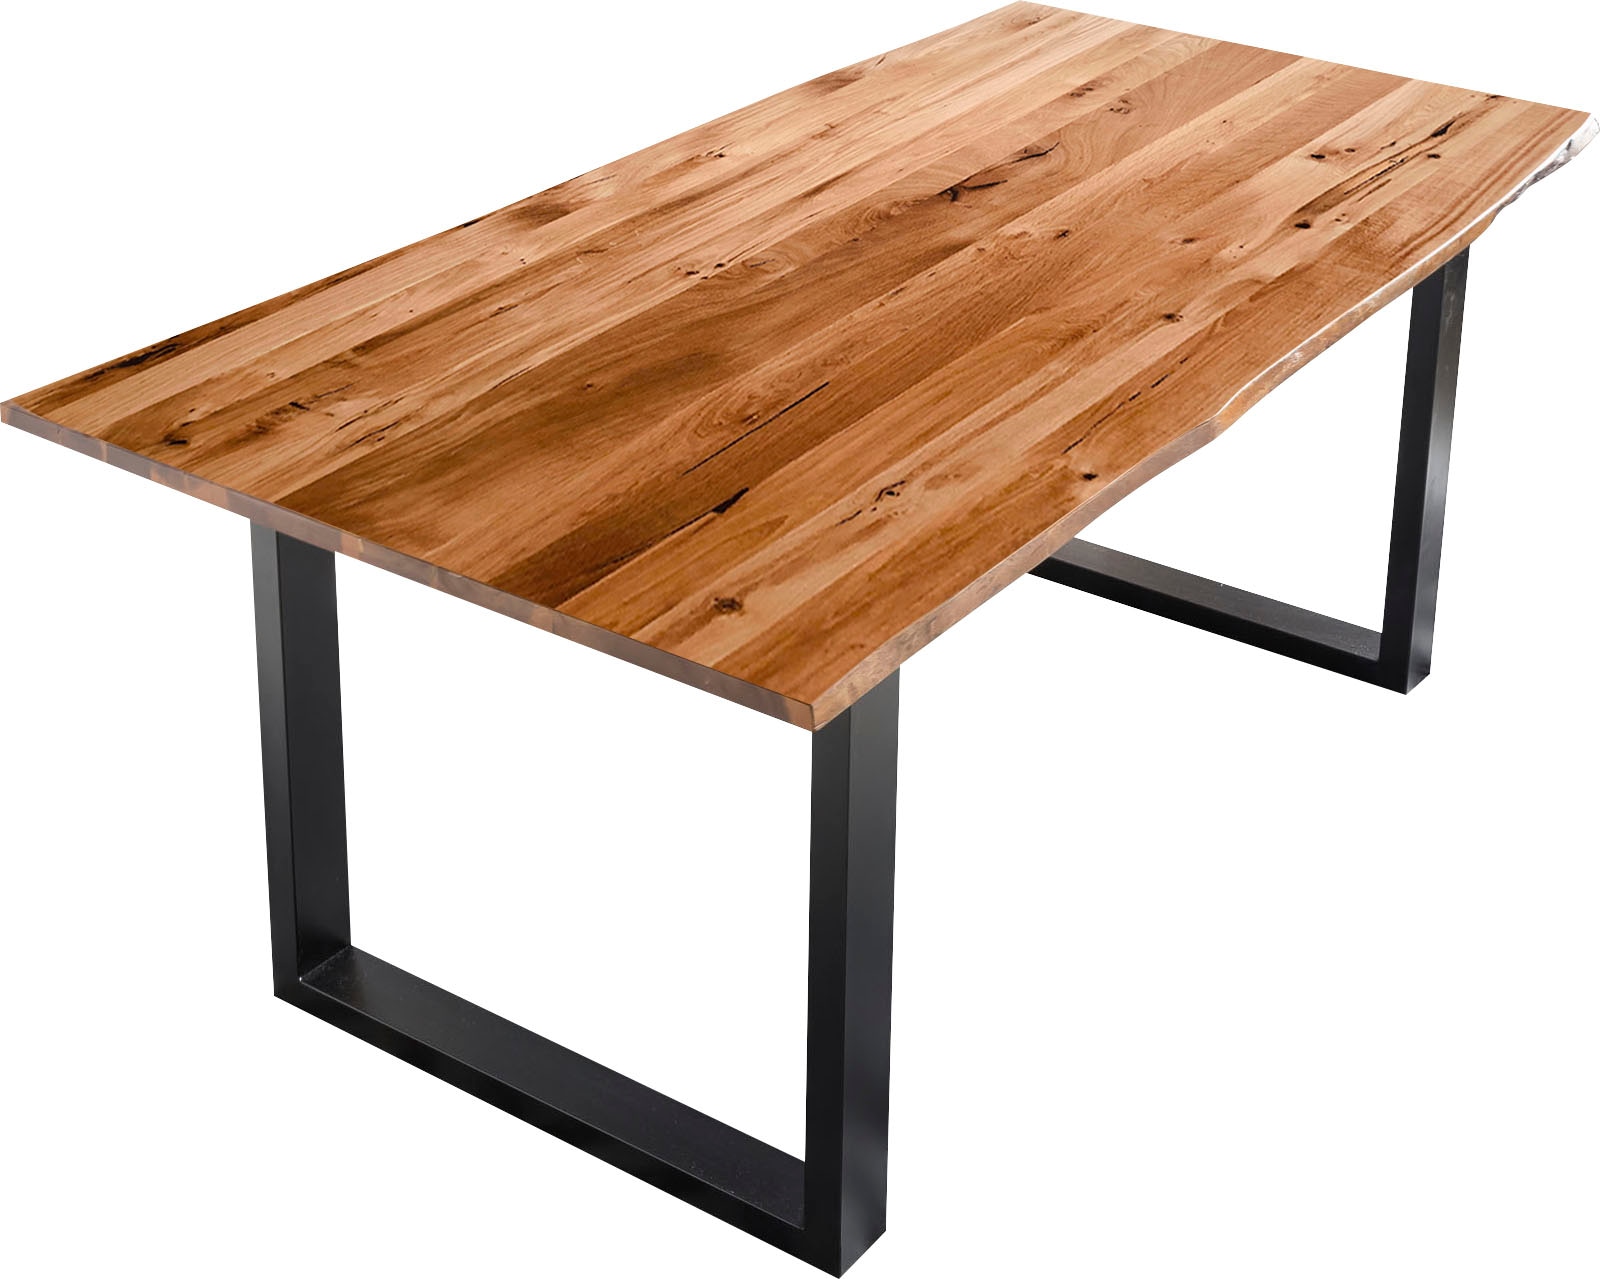 SalesFever Baumkantentisch, Sichtbare Maserung und Astlöcher, Esstisch aus  Massivholz auf Rechnung bestellen